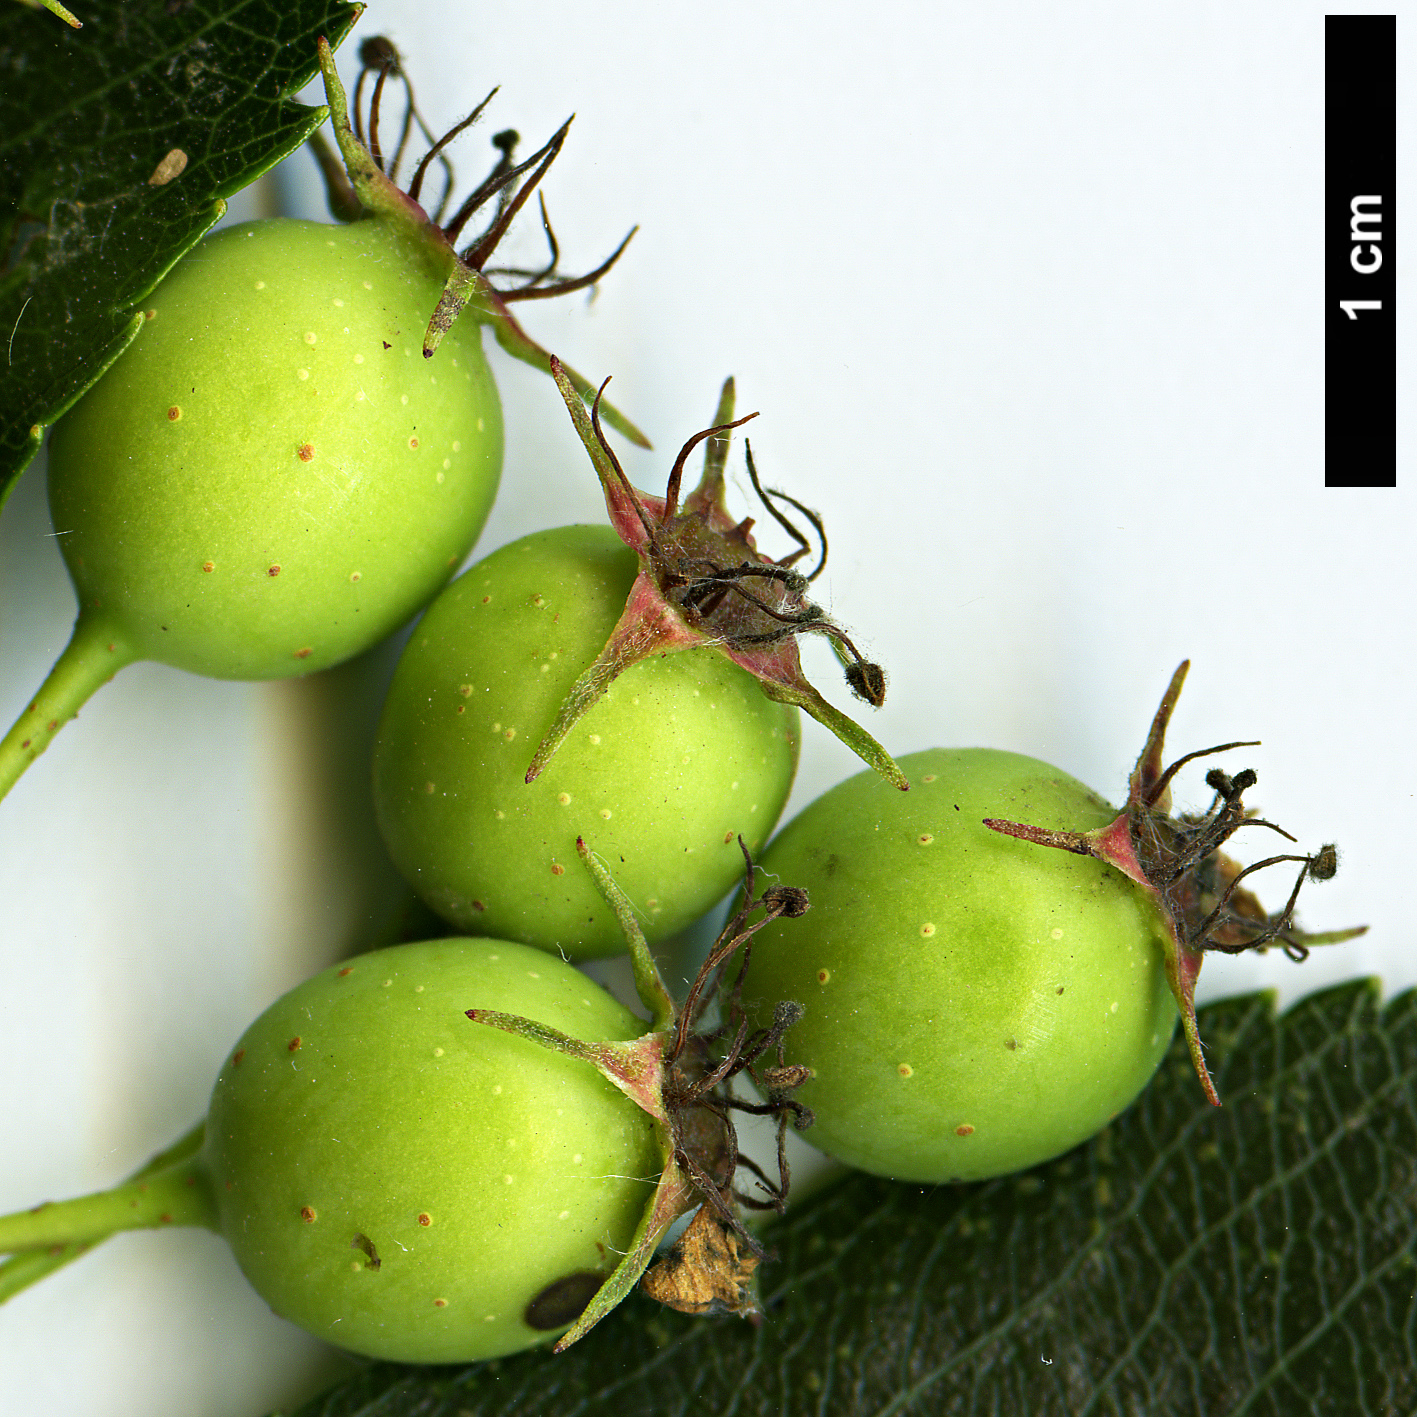 High resolution image: Family: Rosaceae - Genus: Crataegus - Taxon: crus-galli - SpeciesSub: 'Inermis'